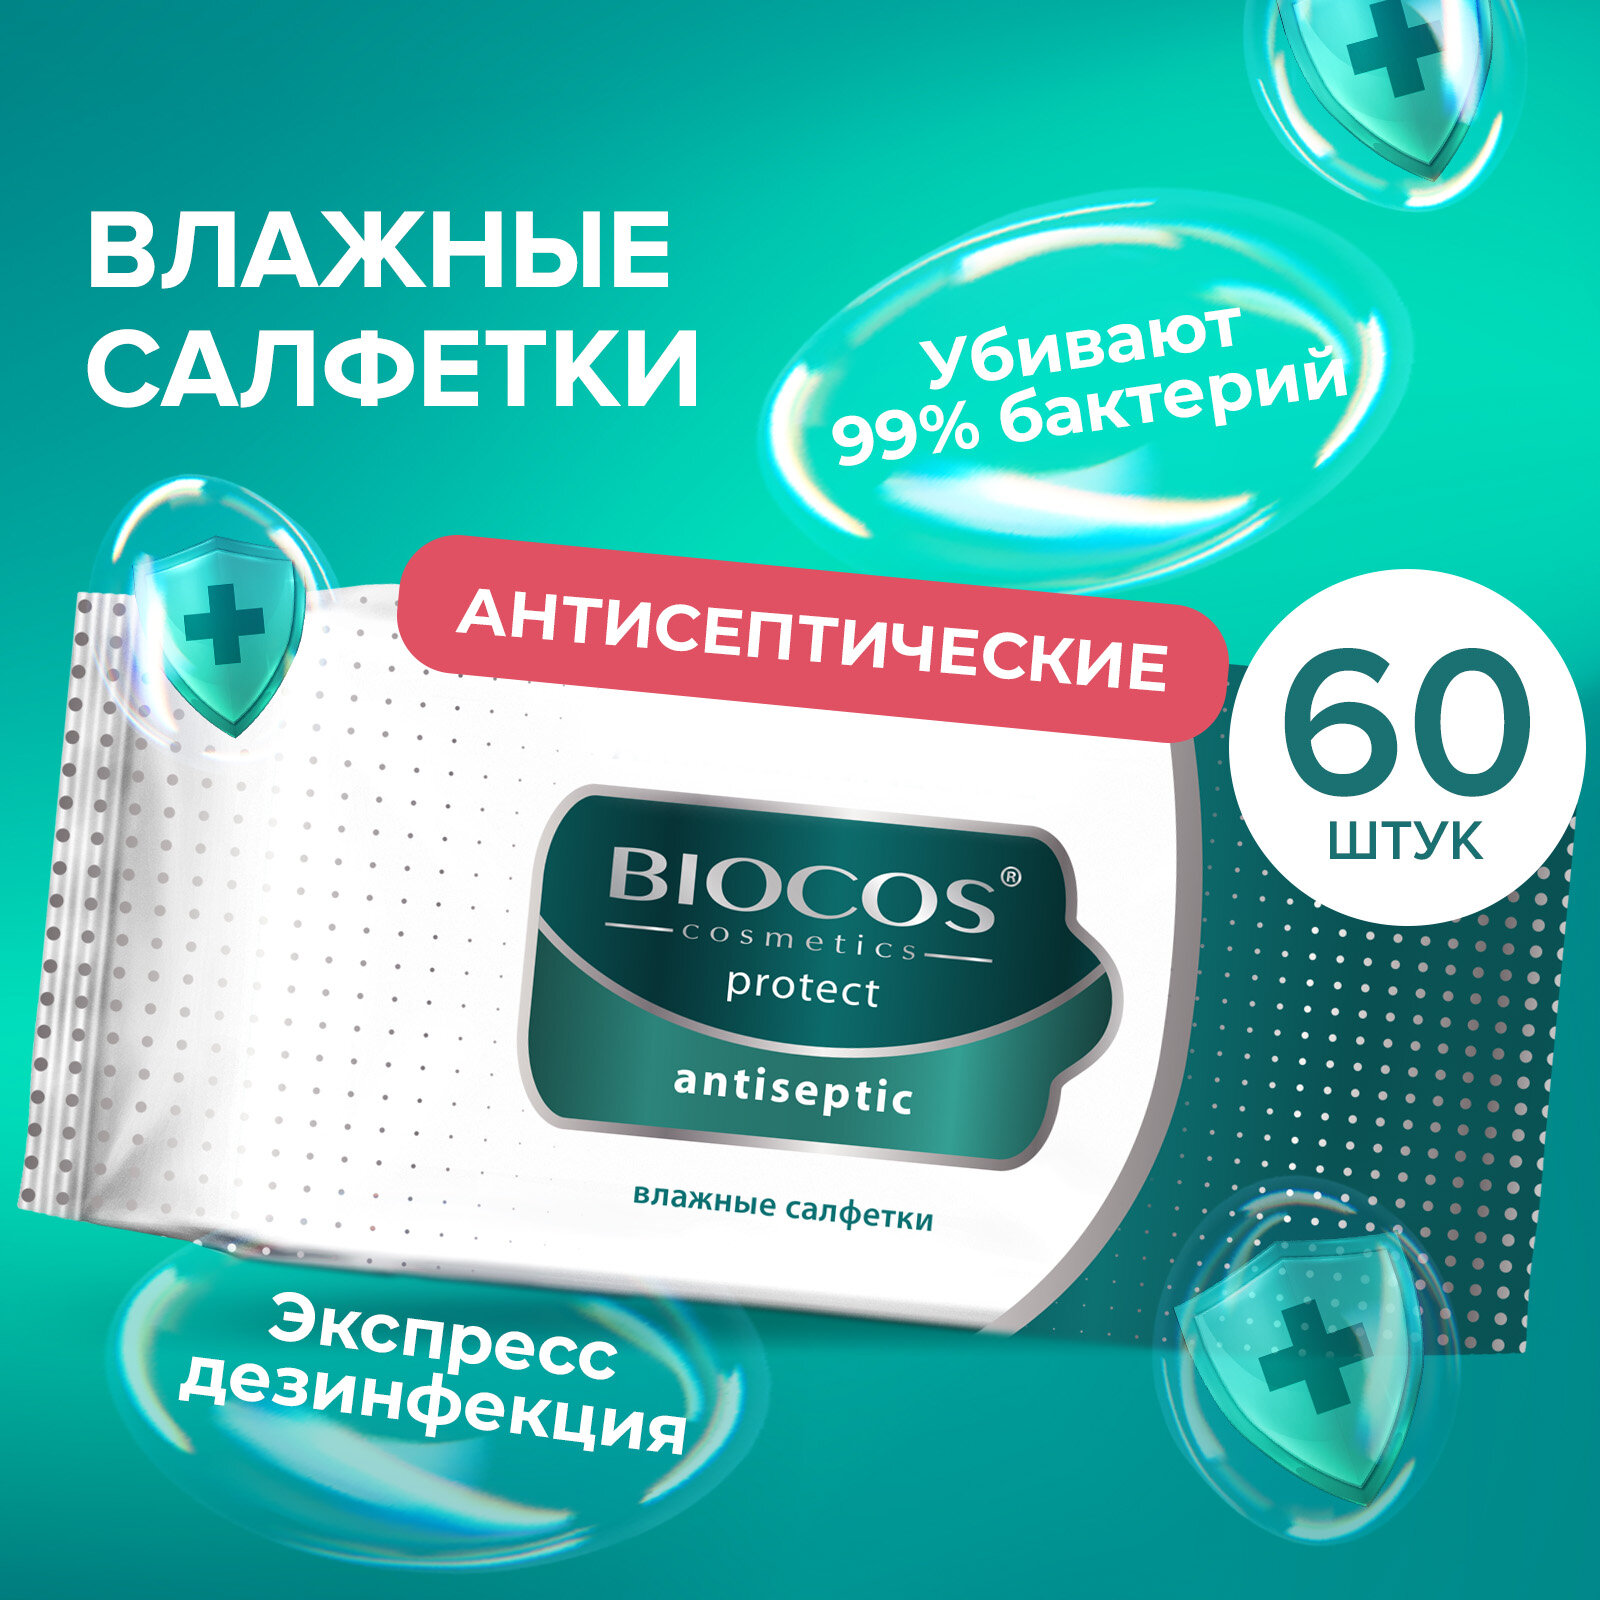 Влажные салфетки Biocos Antiseptic антисептические для гигиены рук со спиртовым лосьоном, 60 штук